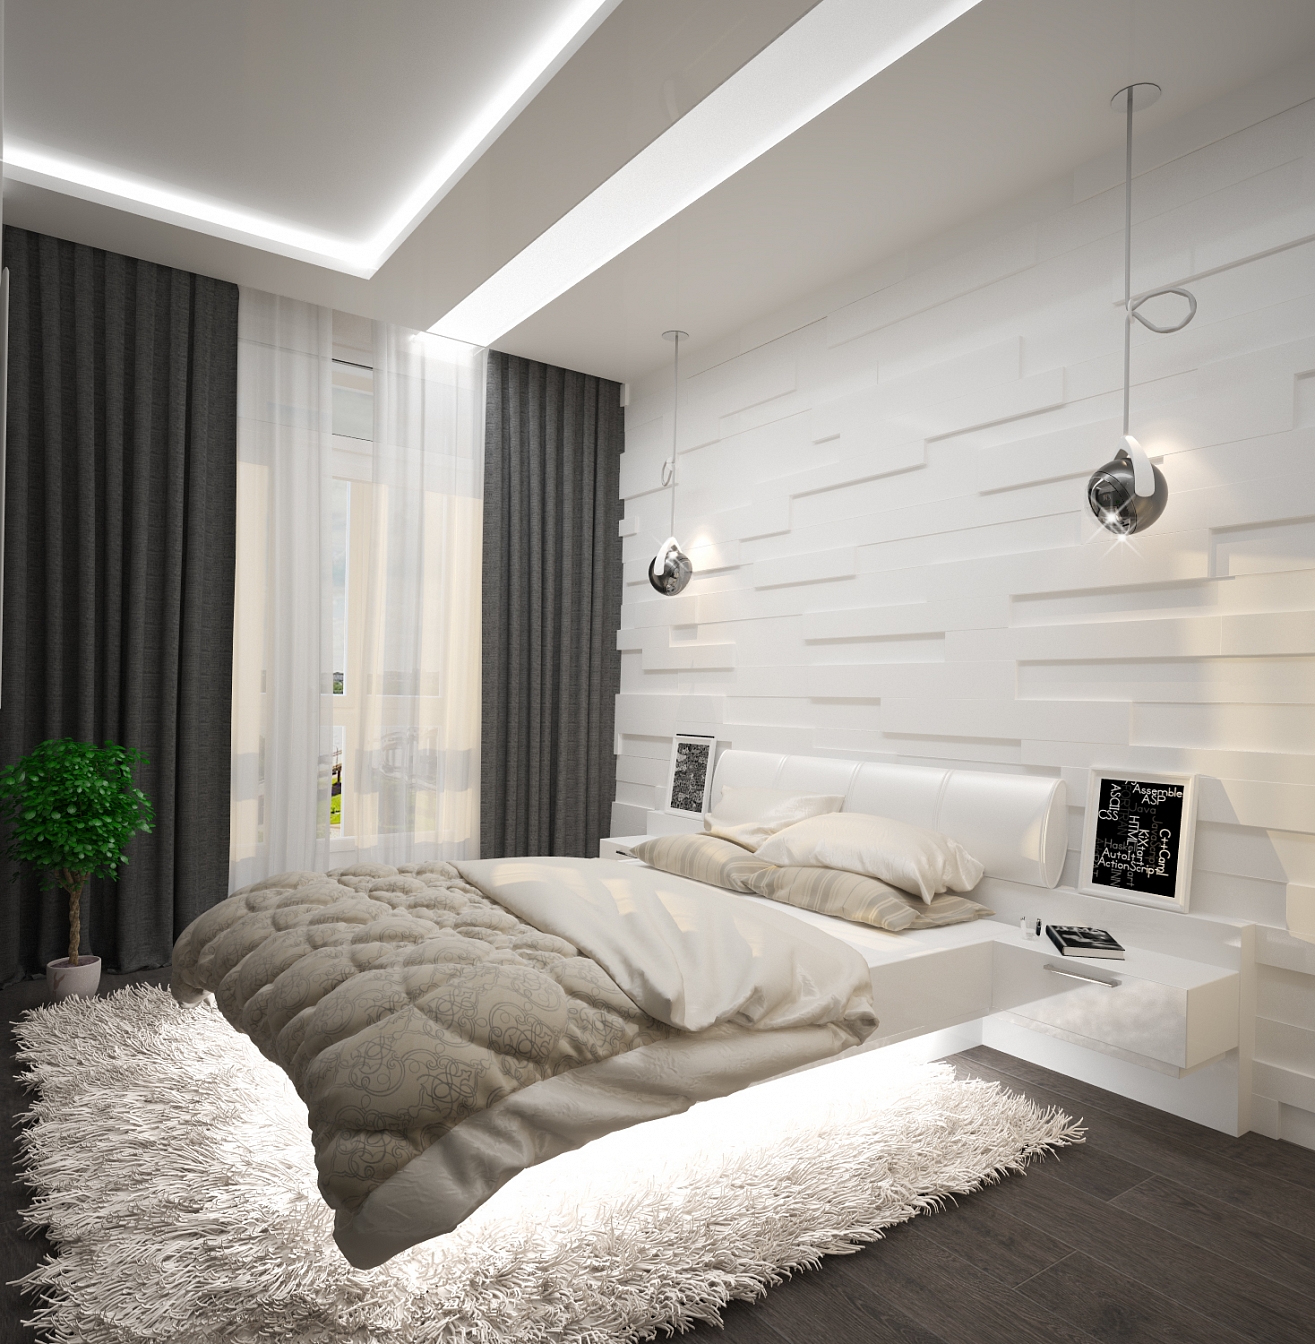 Разработка дизайна интерьера для квартиры на проспекте Патриотов: спальня, фото 1